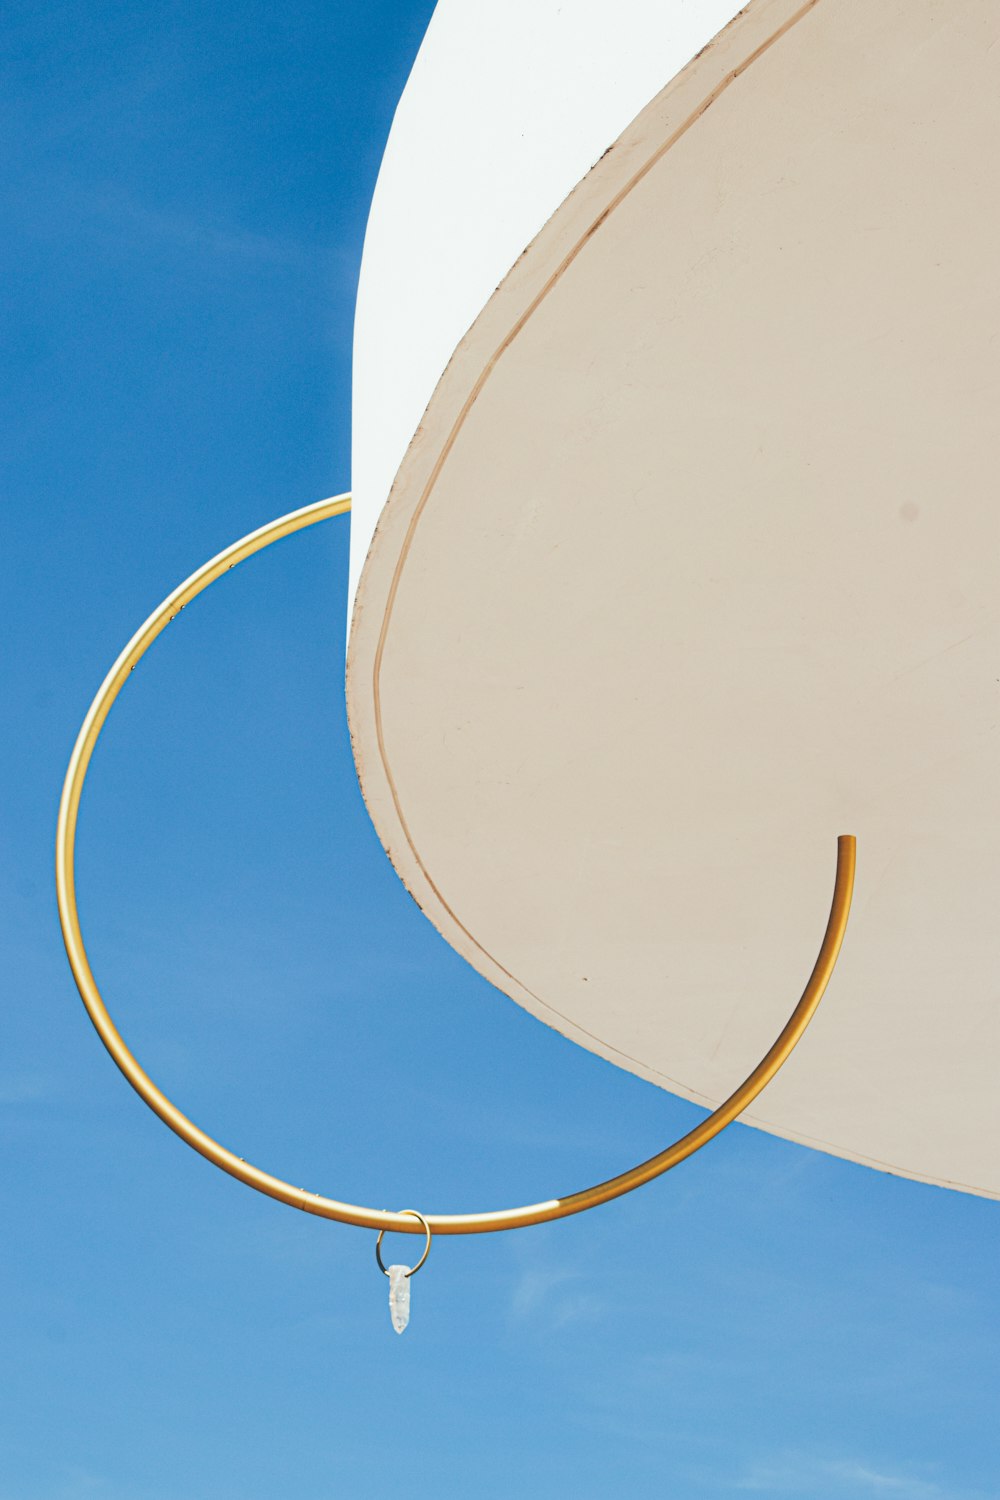 a close up of a white umbrella against a blue sky